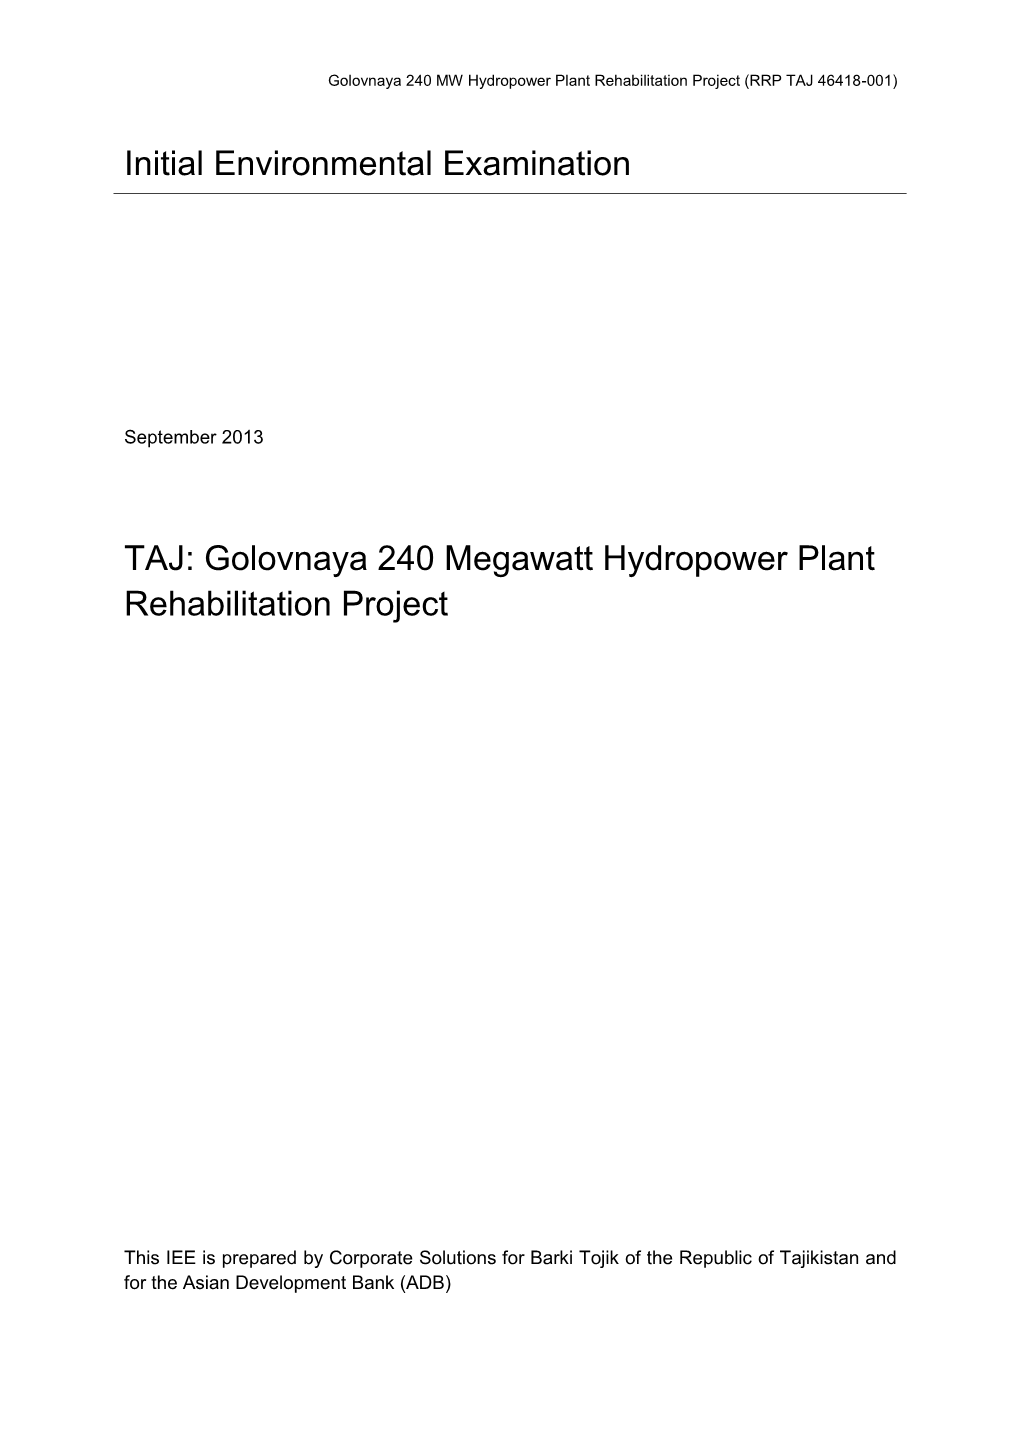 Golovnaya 240 Megawatt Hydropower Plant